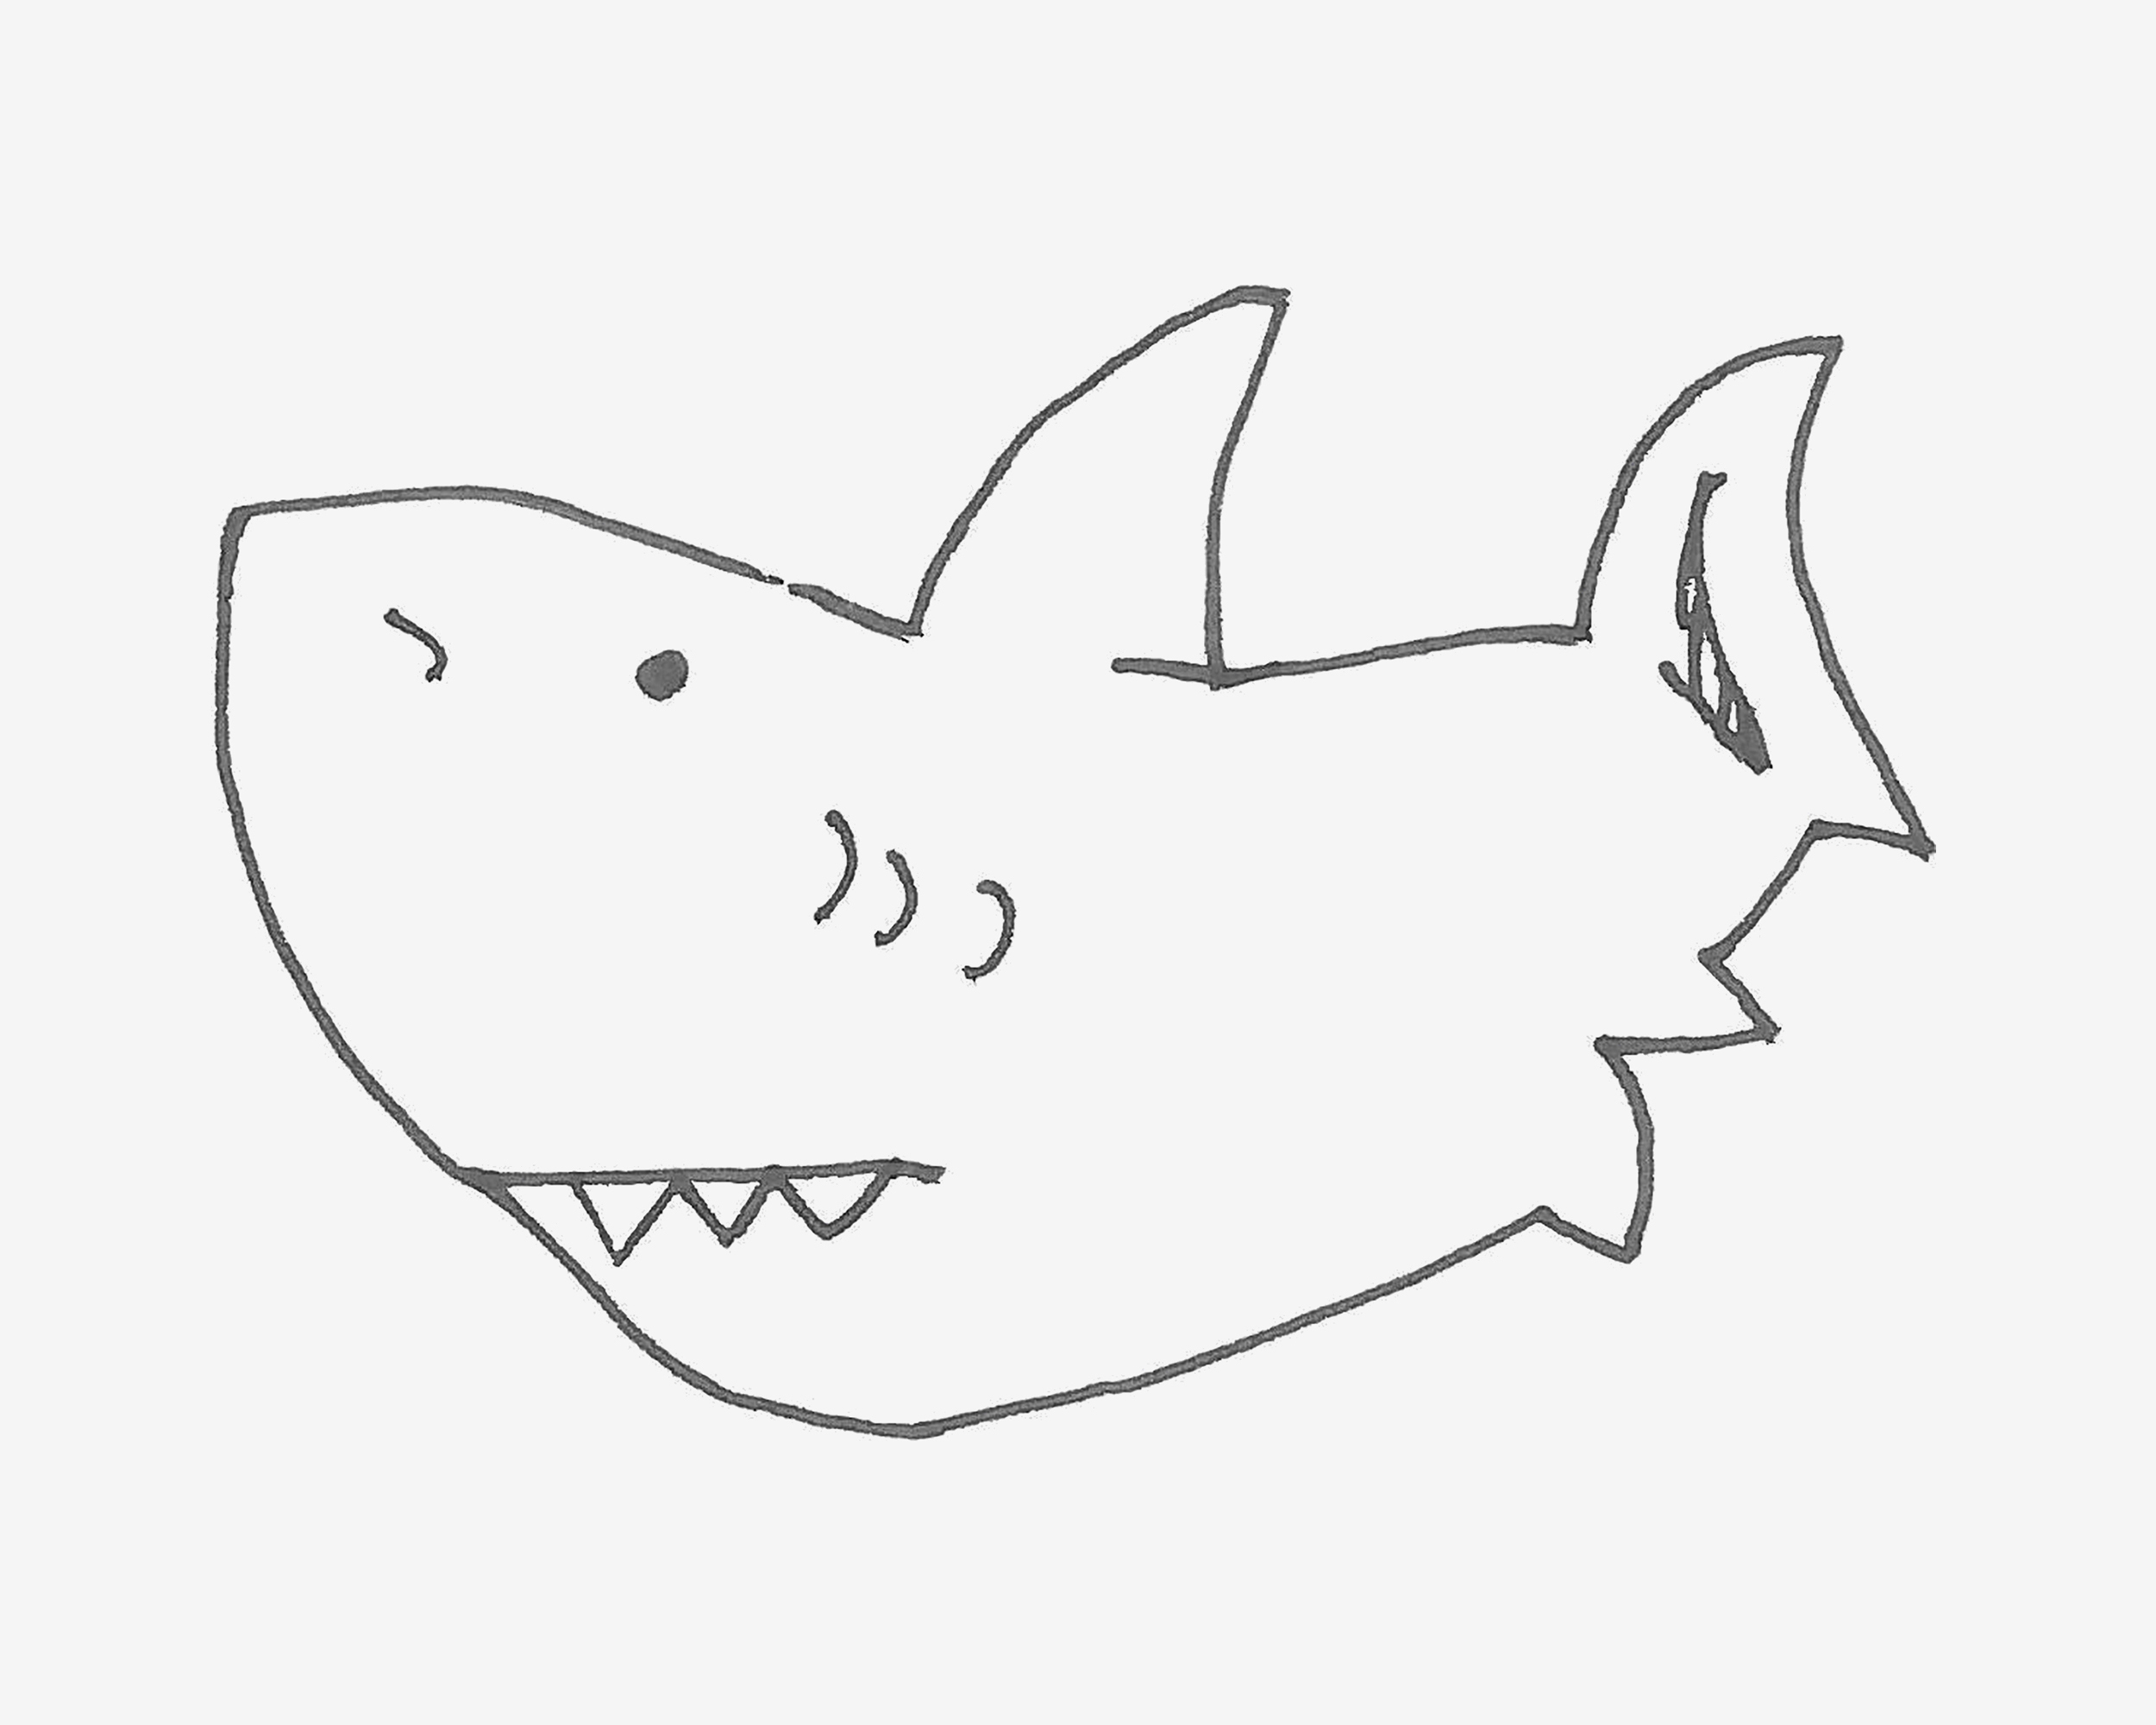 卡通鲨鱼简笔画画法图片步骤💛巧艺网